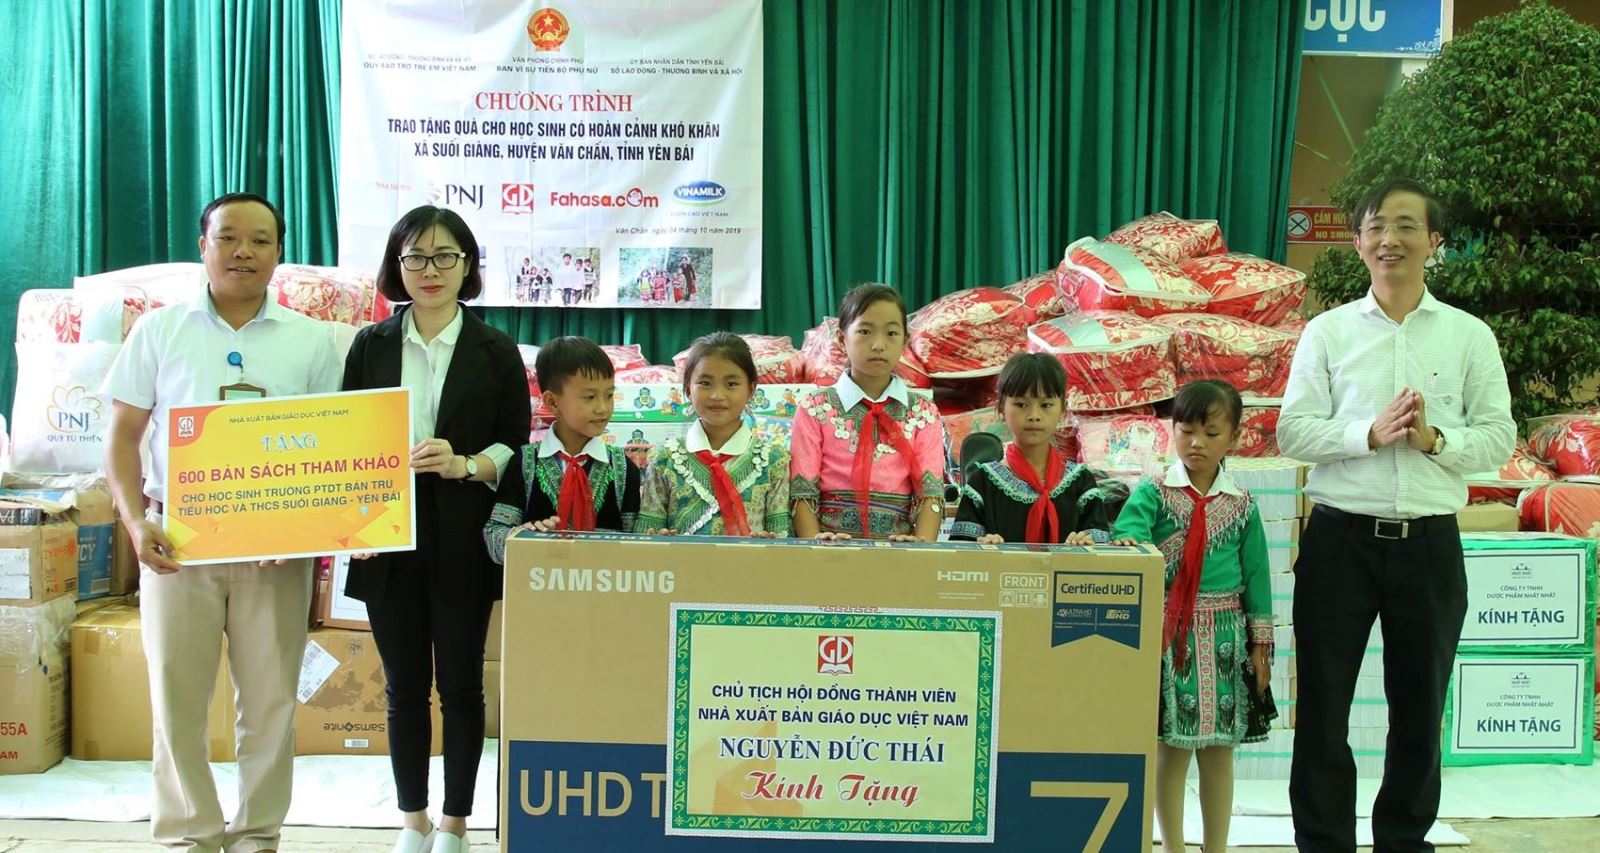 NXB Giáo dục Việt Nam trao tặng sách tại Suối Giàng - Yên Bái